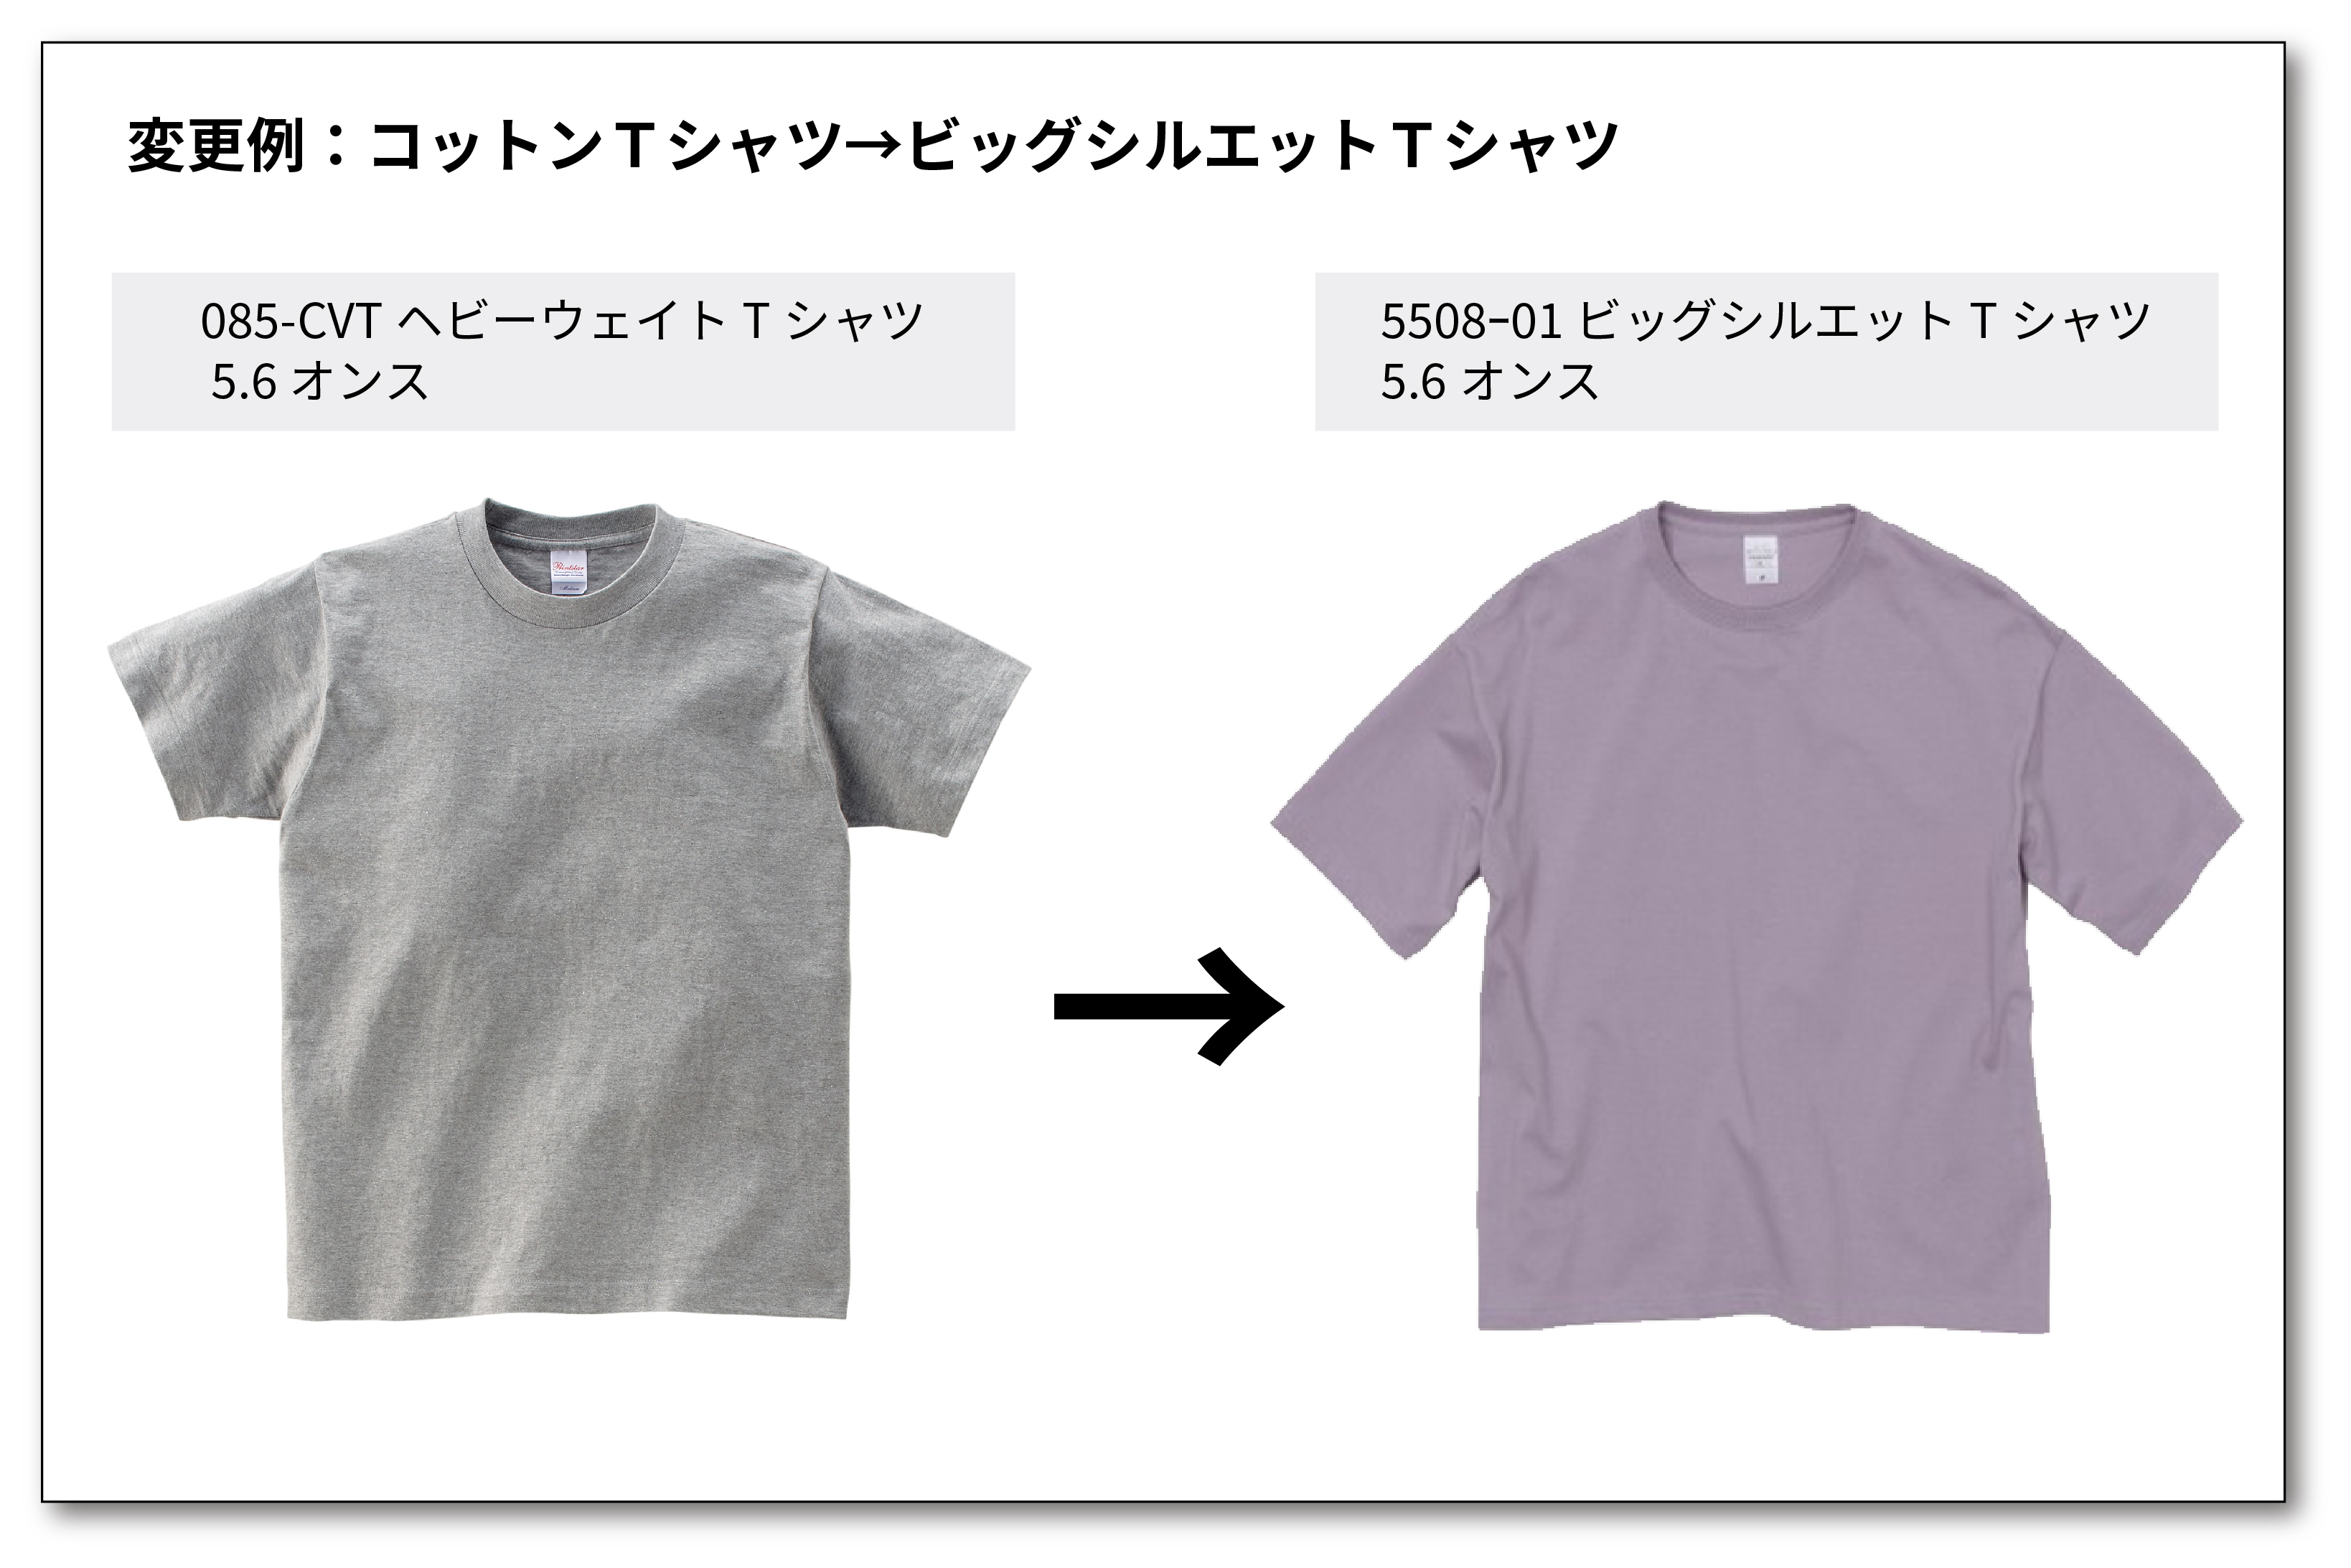 Tシャツ商品乗り換えキャンペーン参考例２